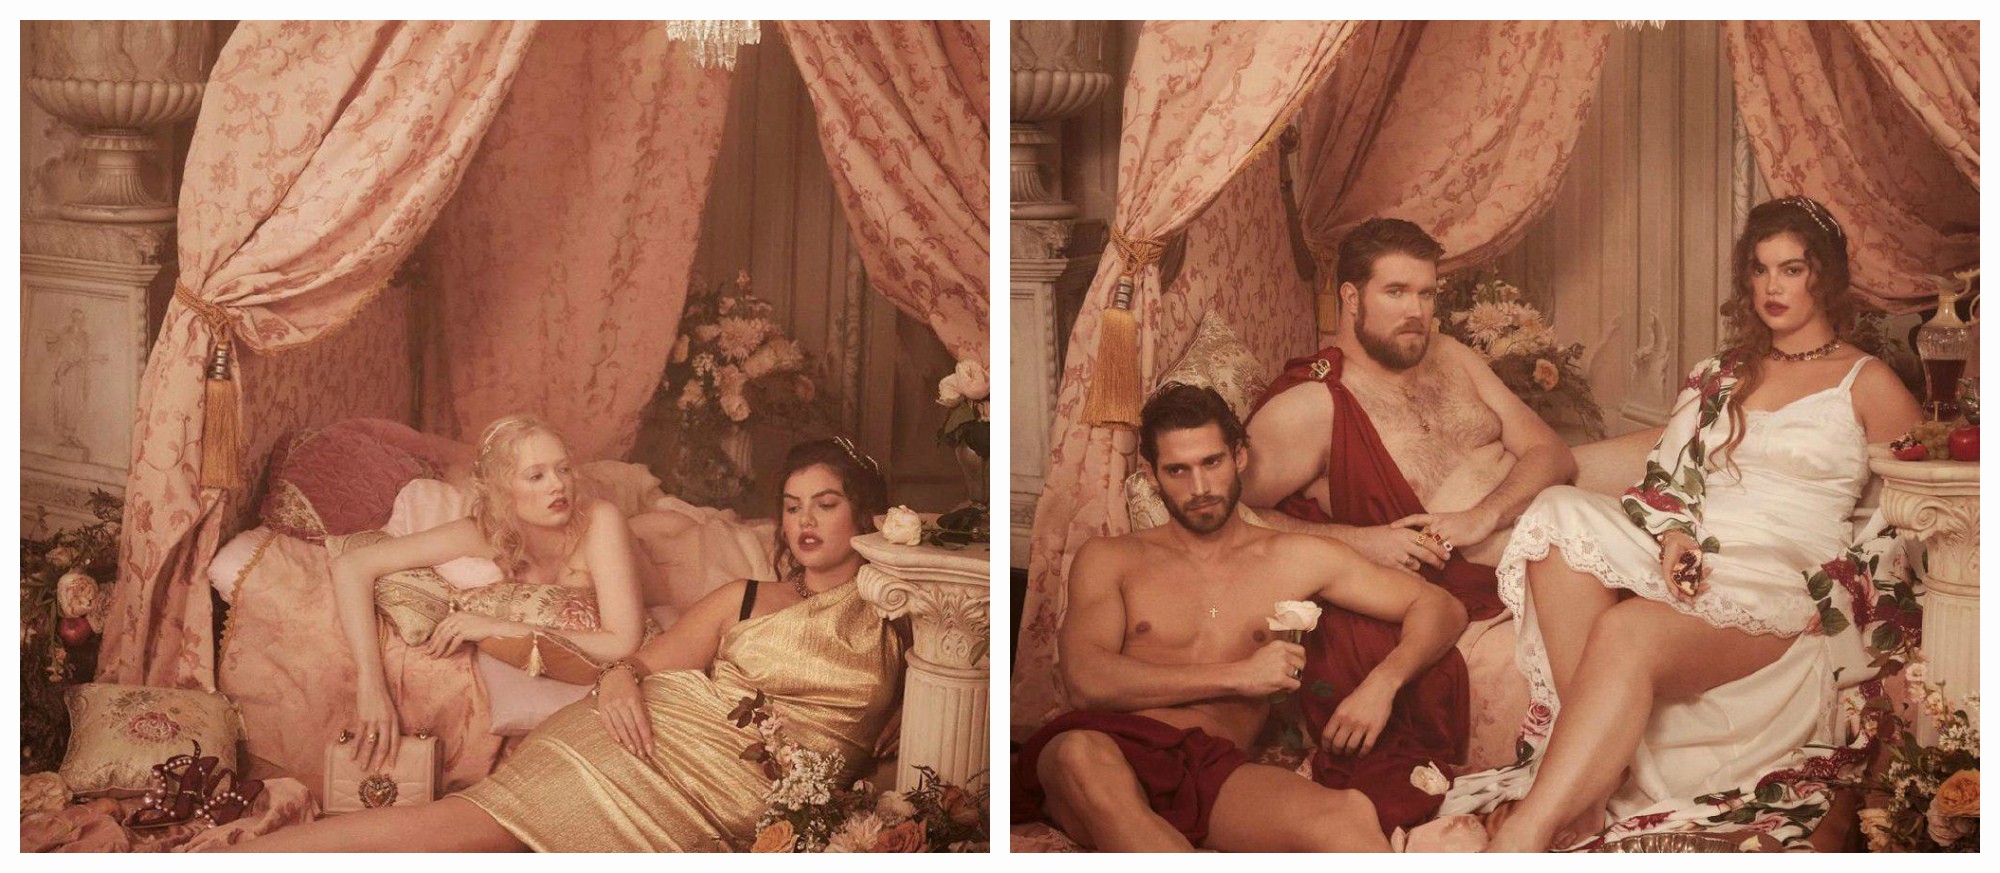 Dolce & Gabbana вдохновились полотнами Рубенса – и сняли новую рекламную кампанию